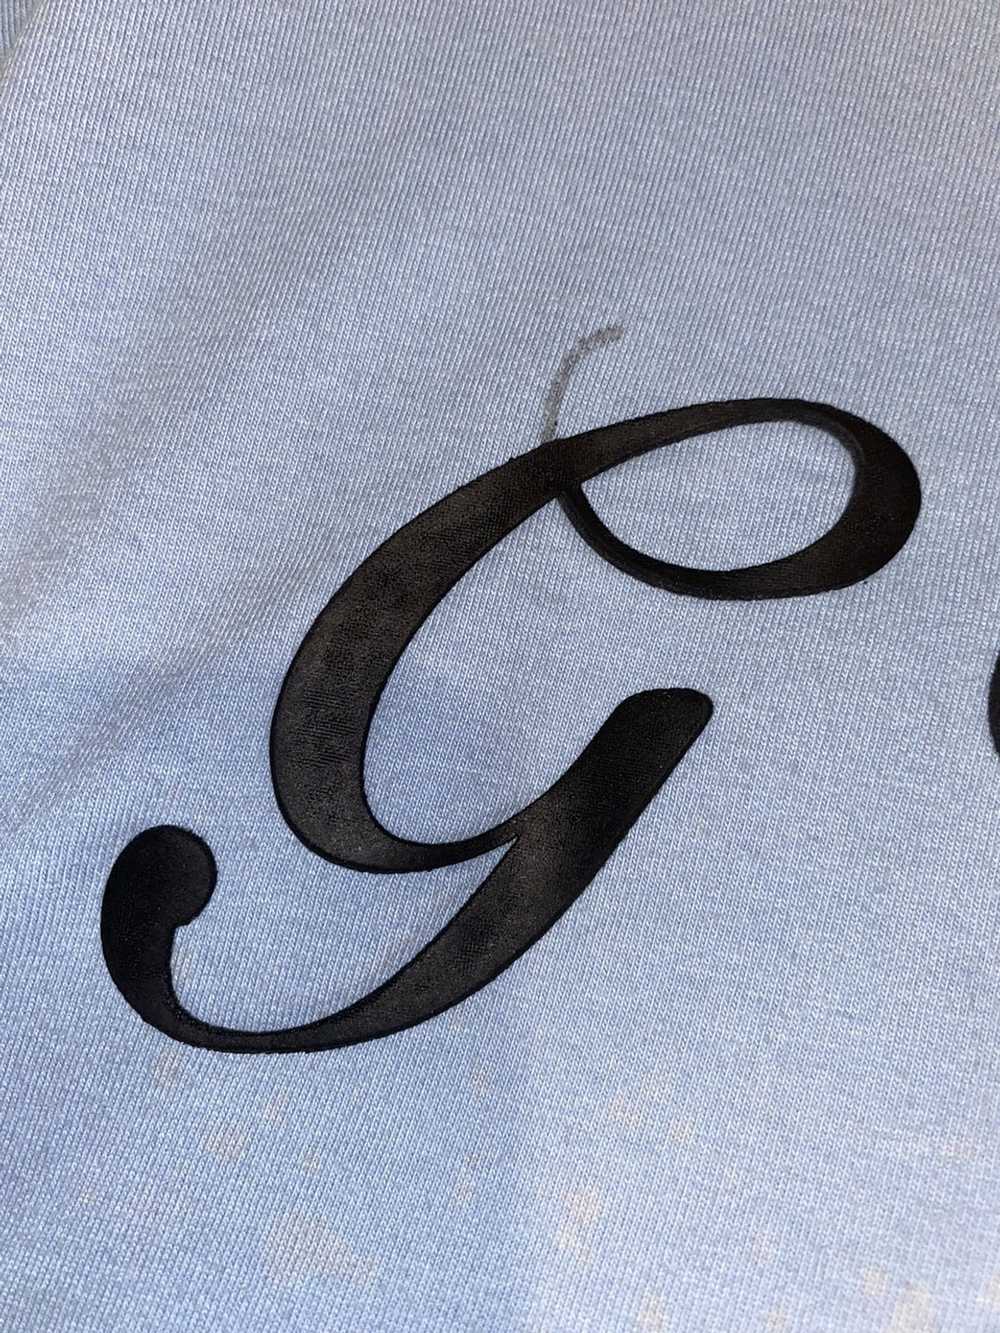 G Unit × Streetwear × Vintage G unit T Shirt - image 5